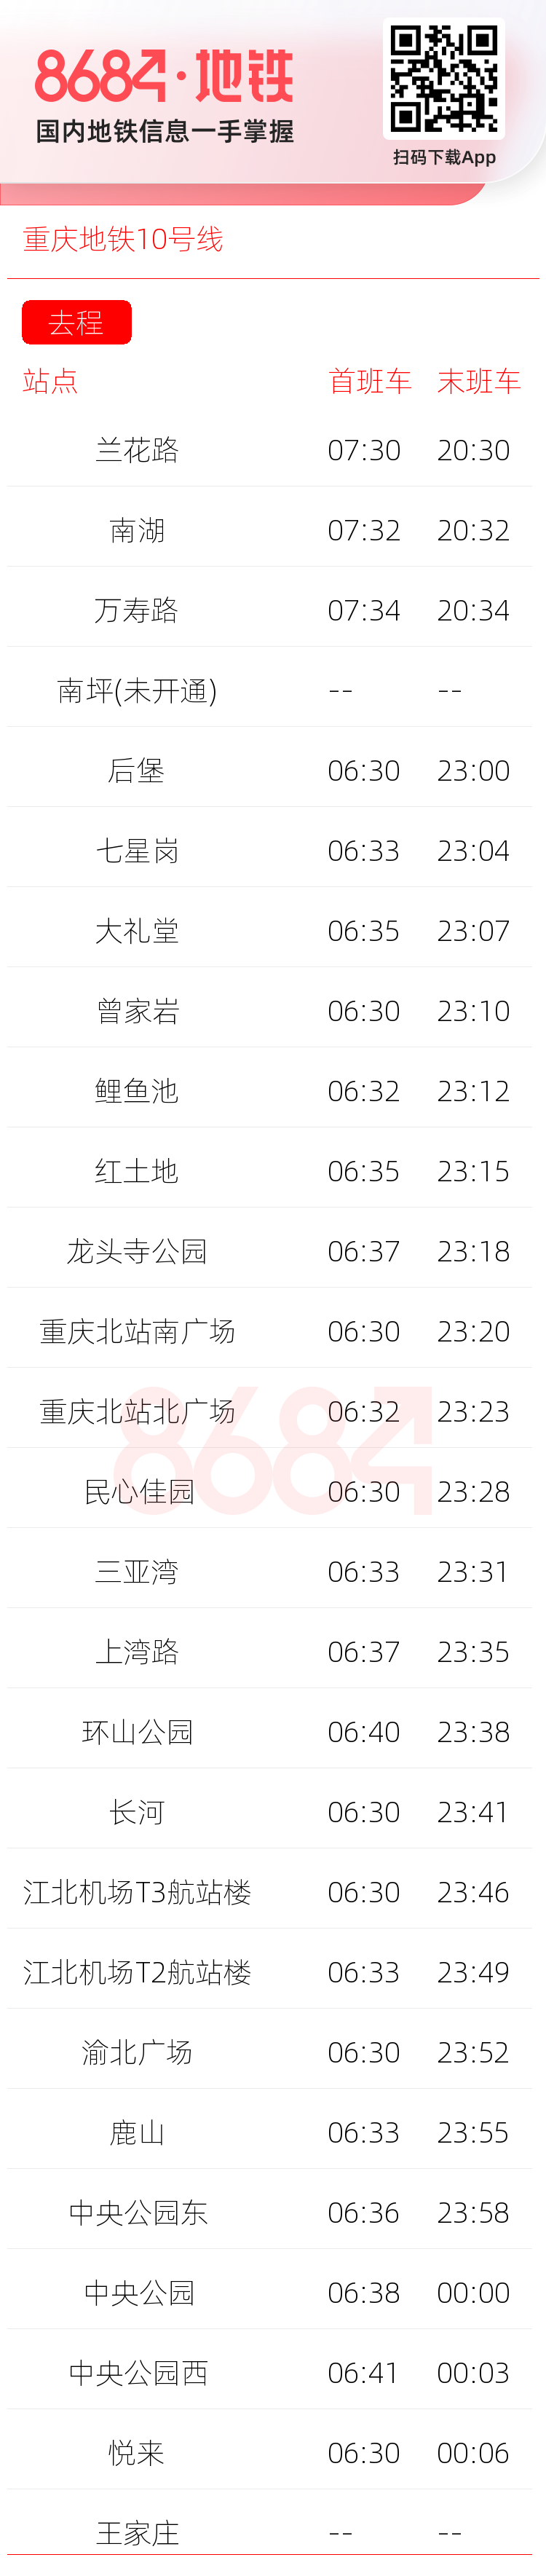 重庆地铁10号线运营时间表